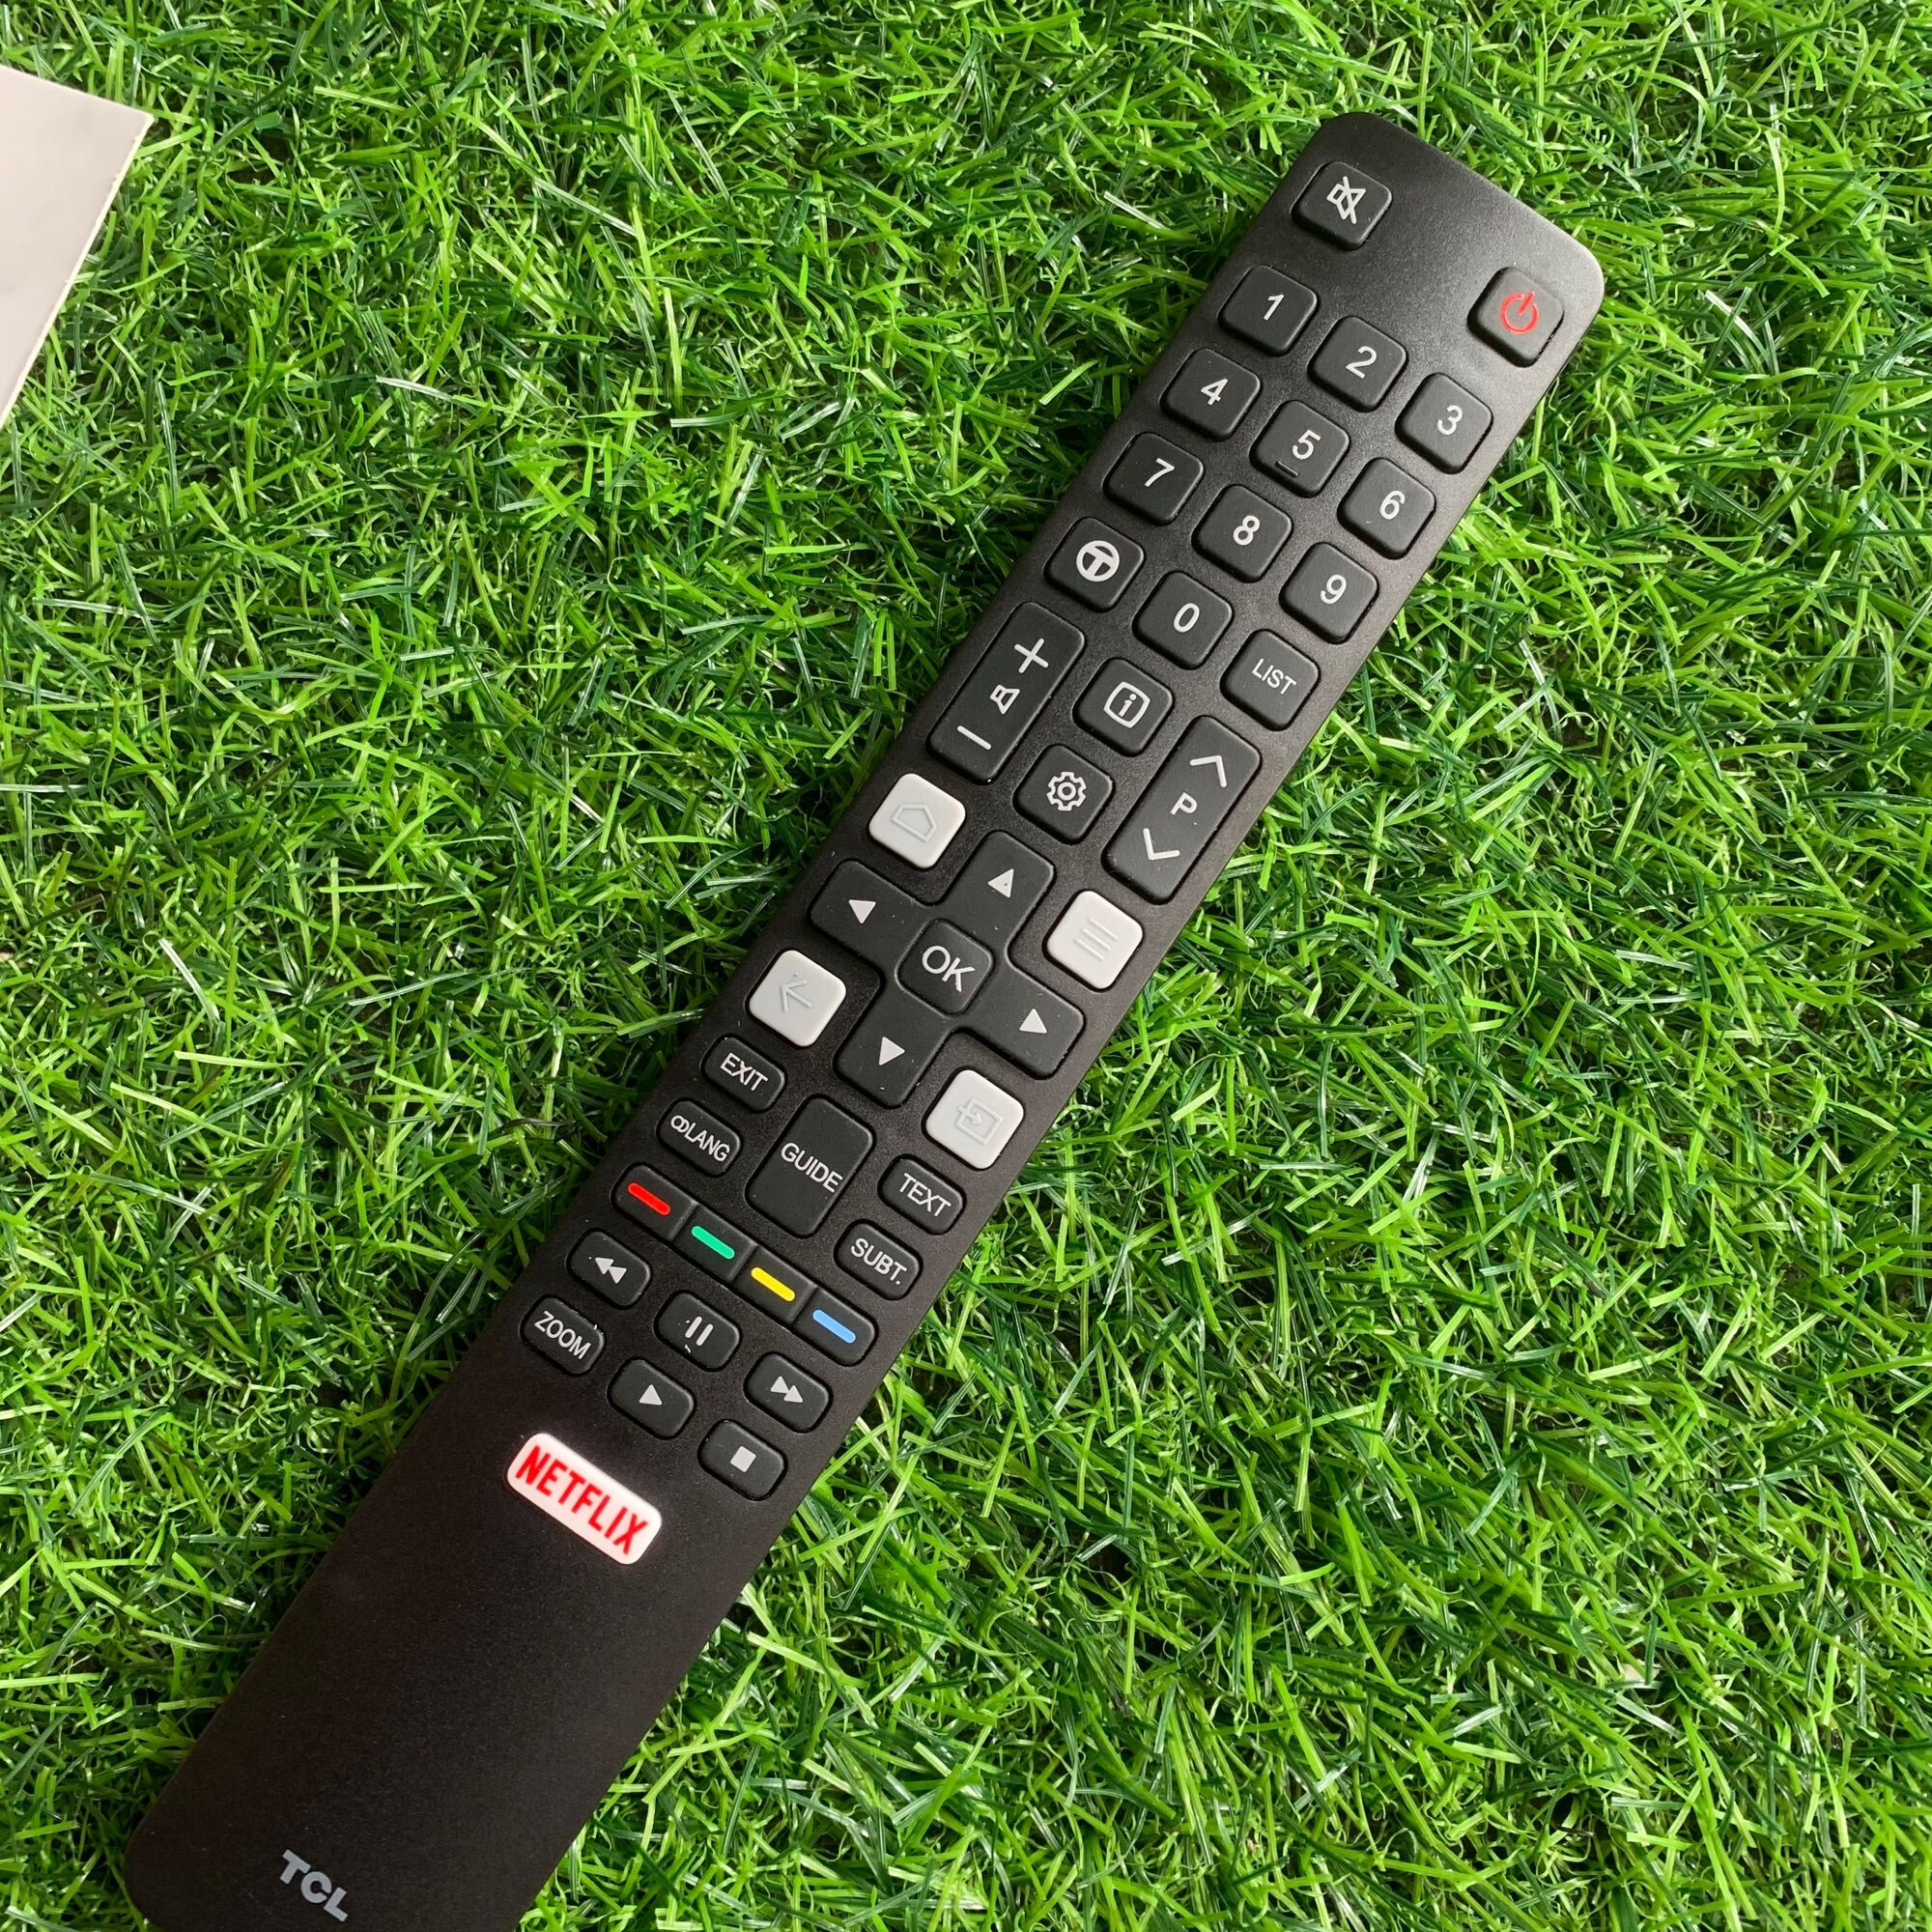 Điều khiển tivi TCL smart Chính hãng 100% [ tặng kèm pin] remote tivi tcl dài dẹt, có bảo hành...